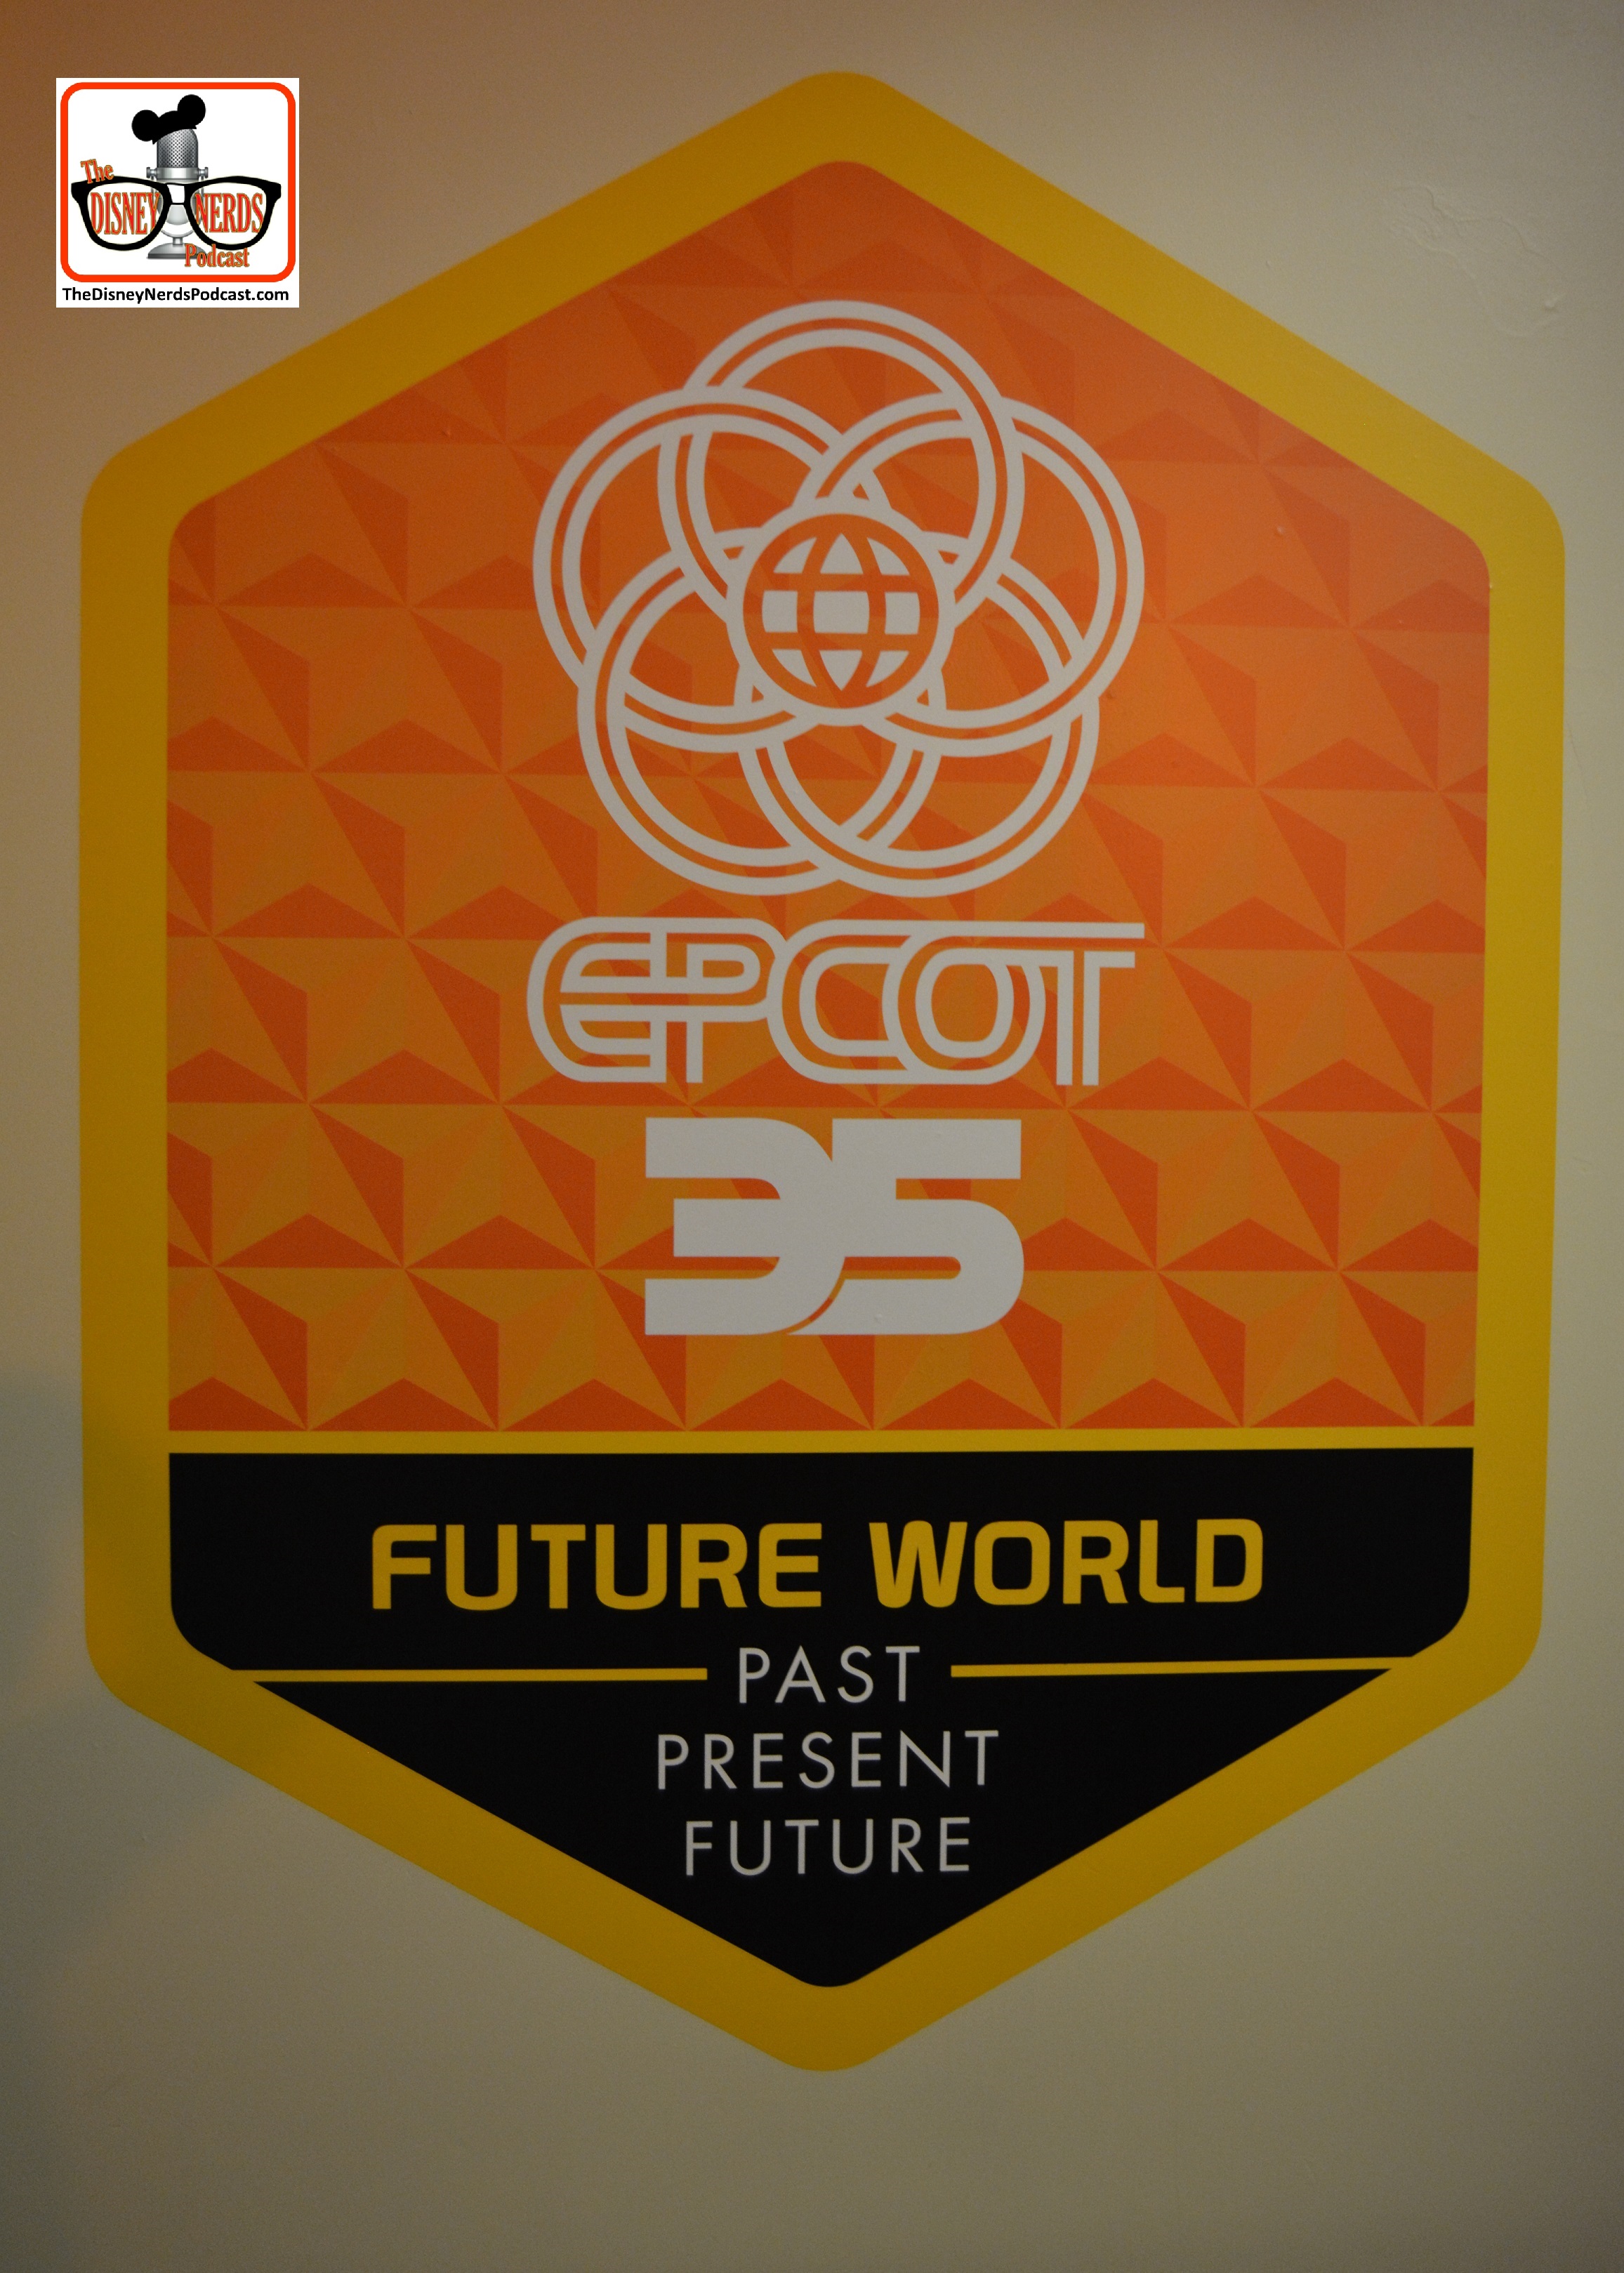 Epcot Legacy Showplace - Future World #Epcot35